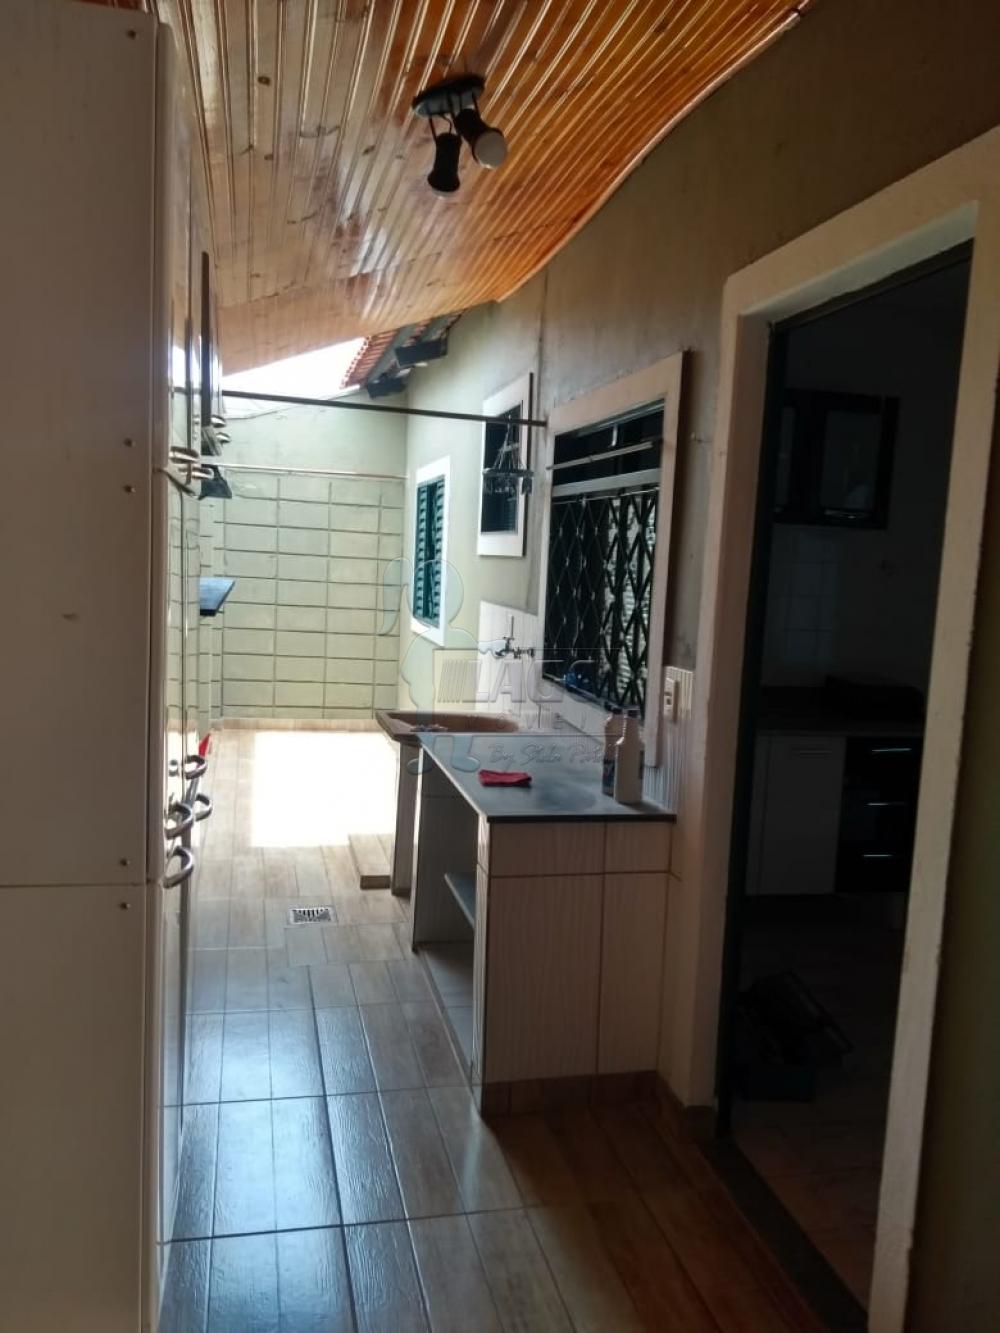 Comprar Casa condomínio / Padrão em Ribeirão Preto R$ 190.000,00 - Foto 3